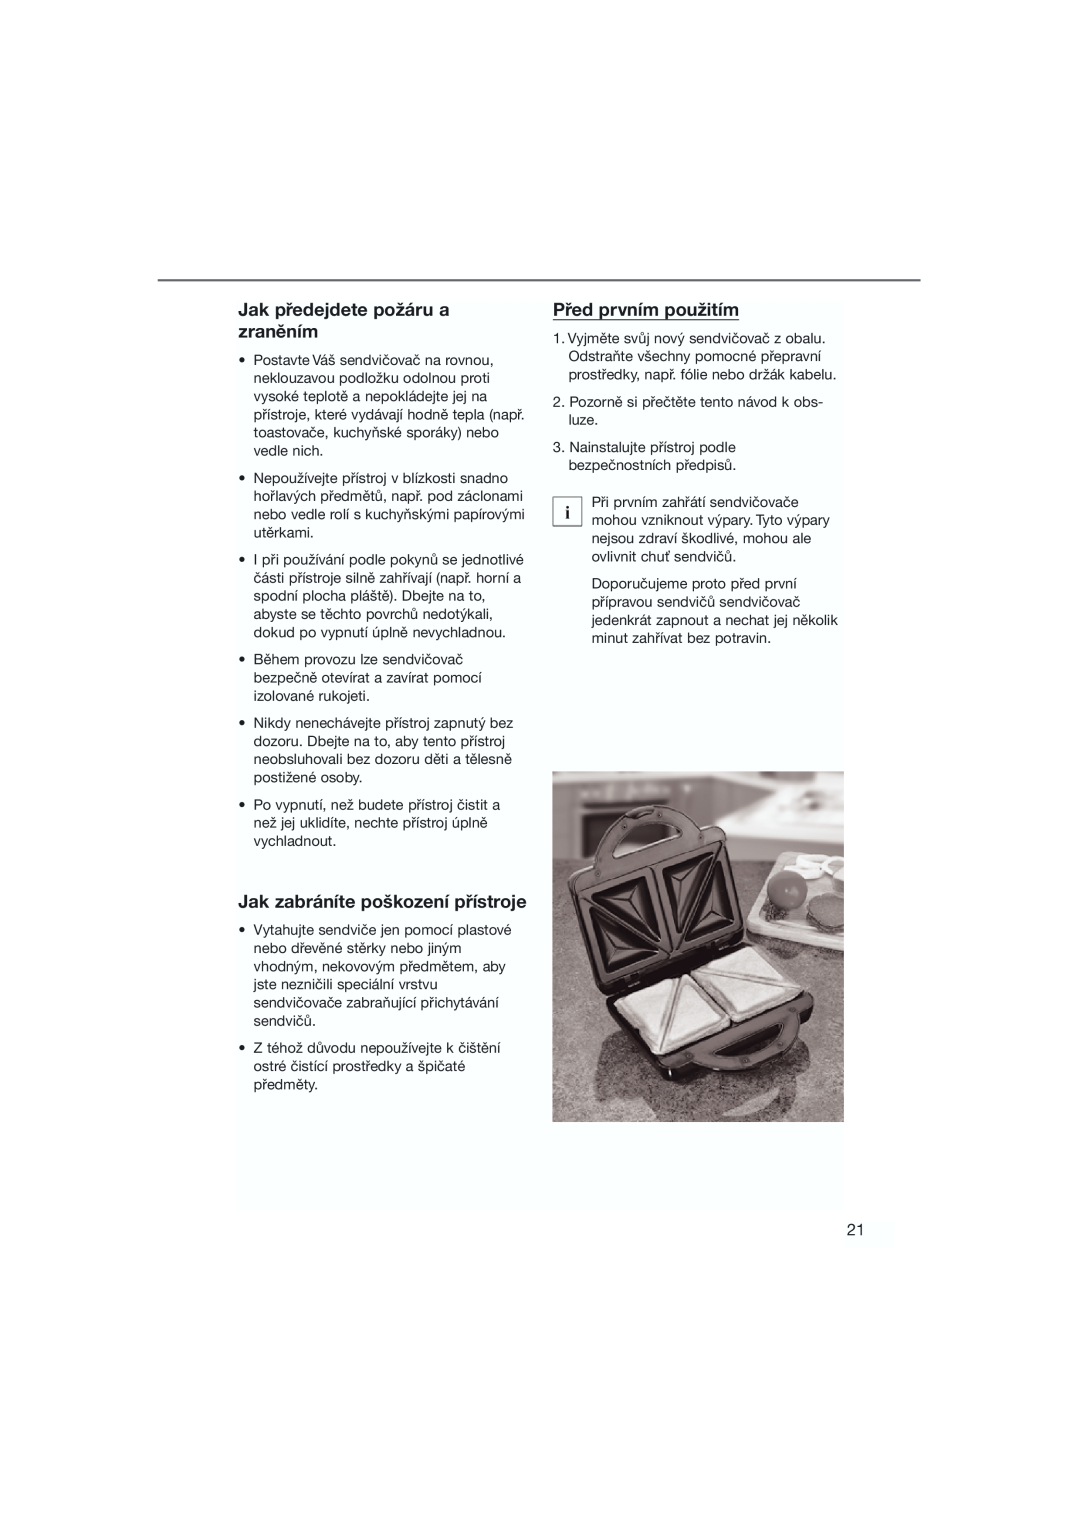 Bifinett KH 1120 manual Jak předejdete požáru a zraněním, Jak zabráníte poškození přístroje, Před prvním použitím 